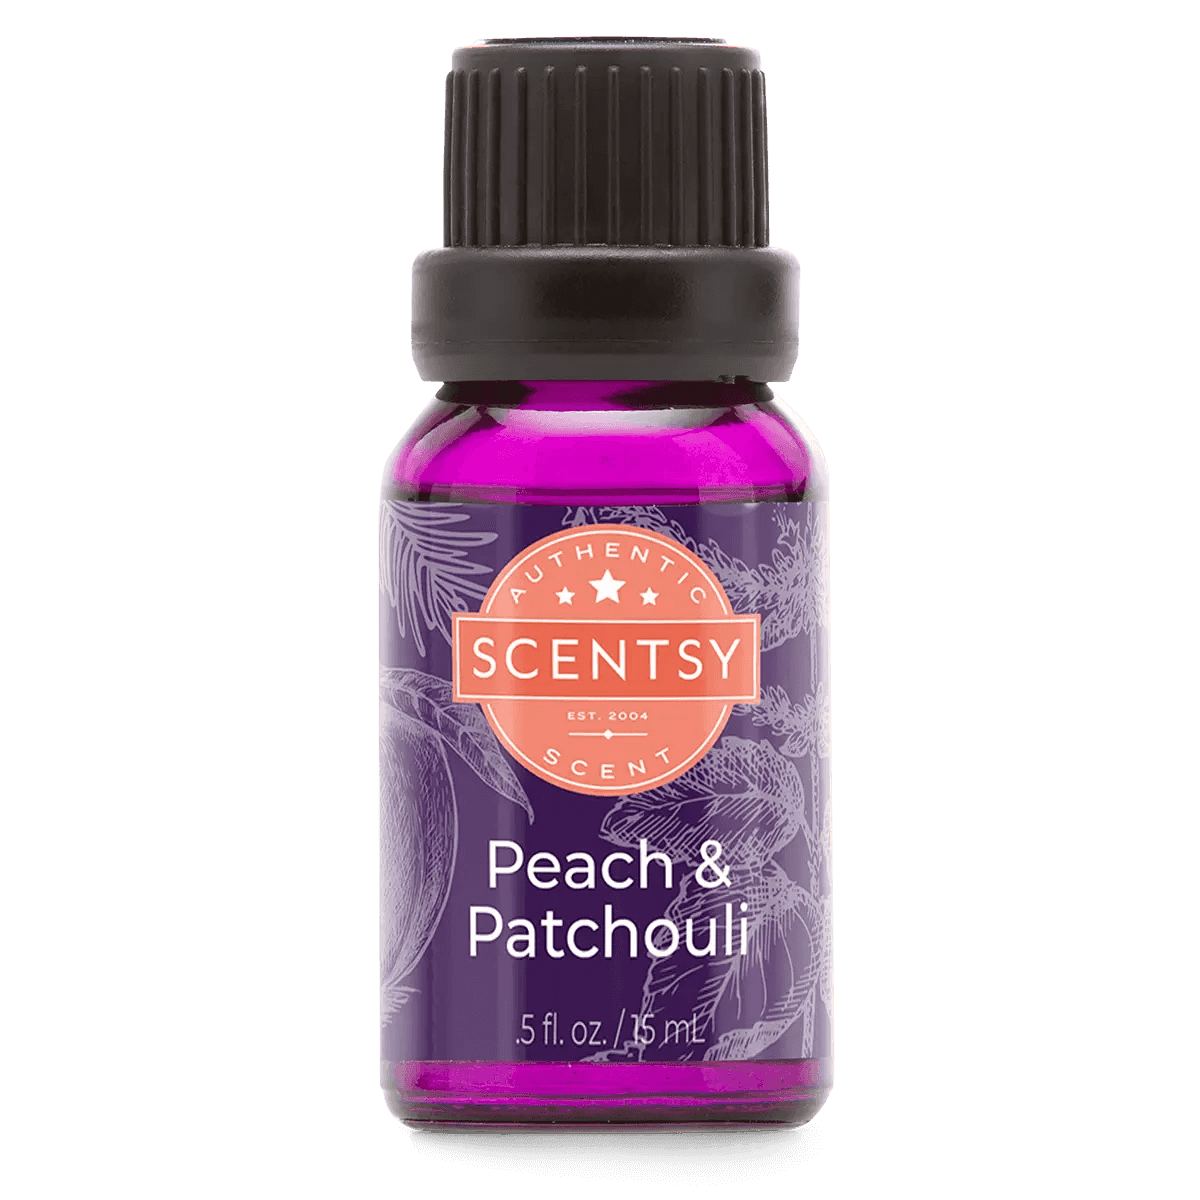 Peach & Patchouli Natural Oil Blend